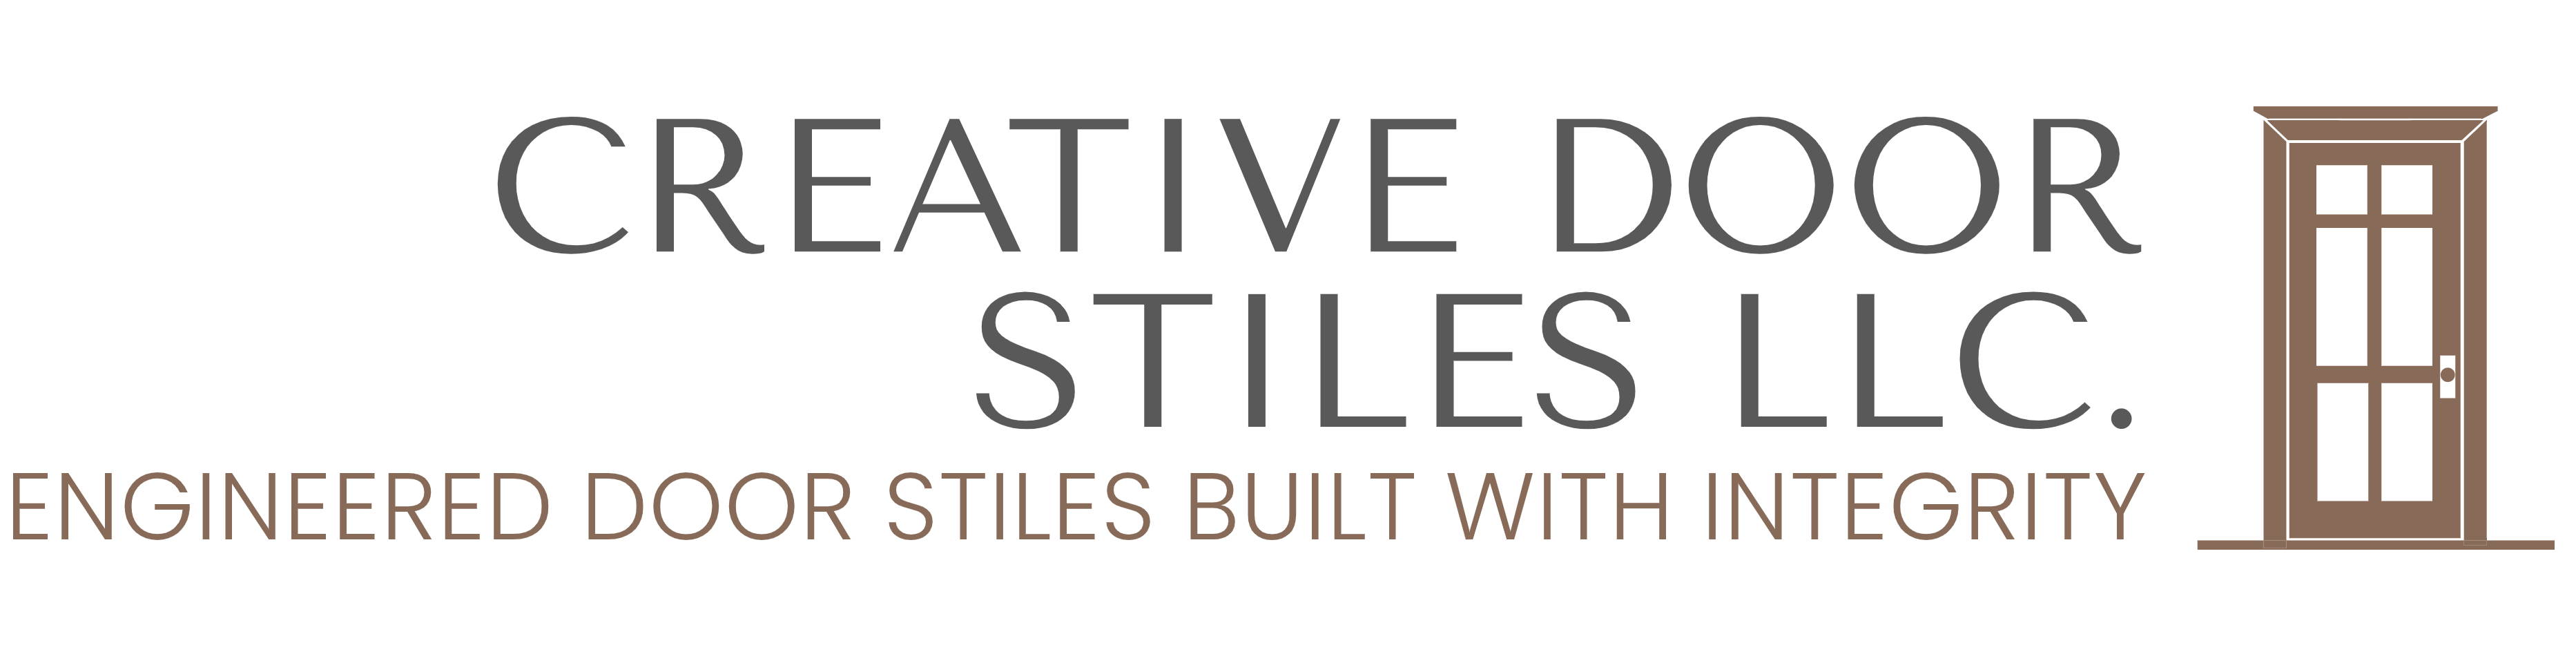 Creative Door Stiles, LLC